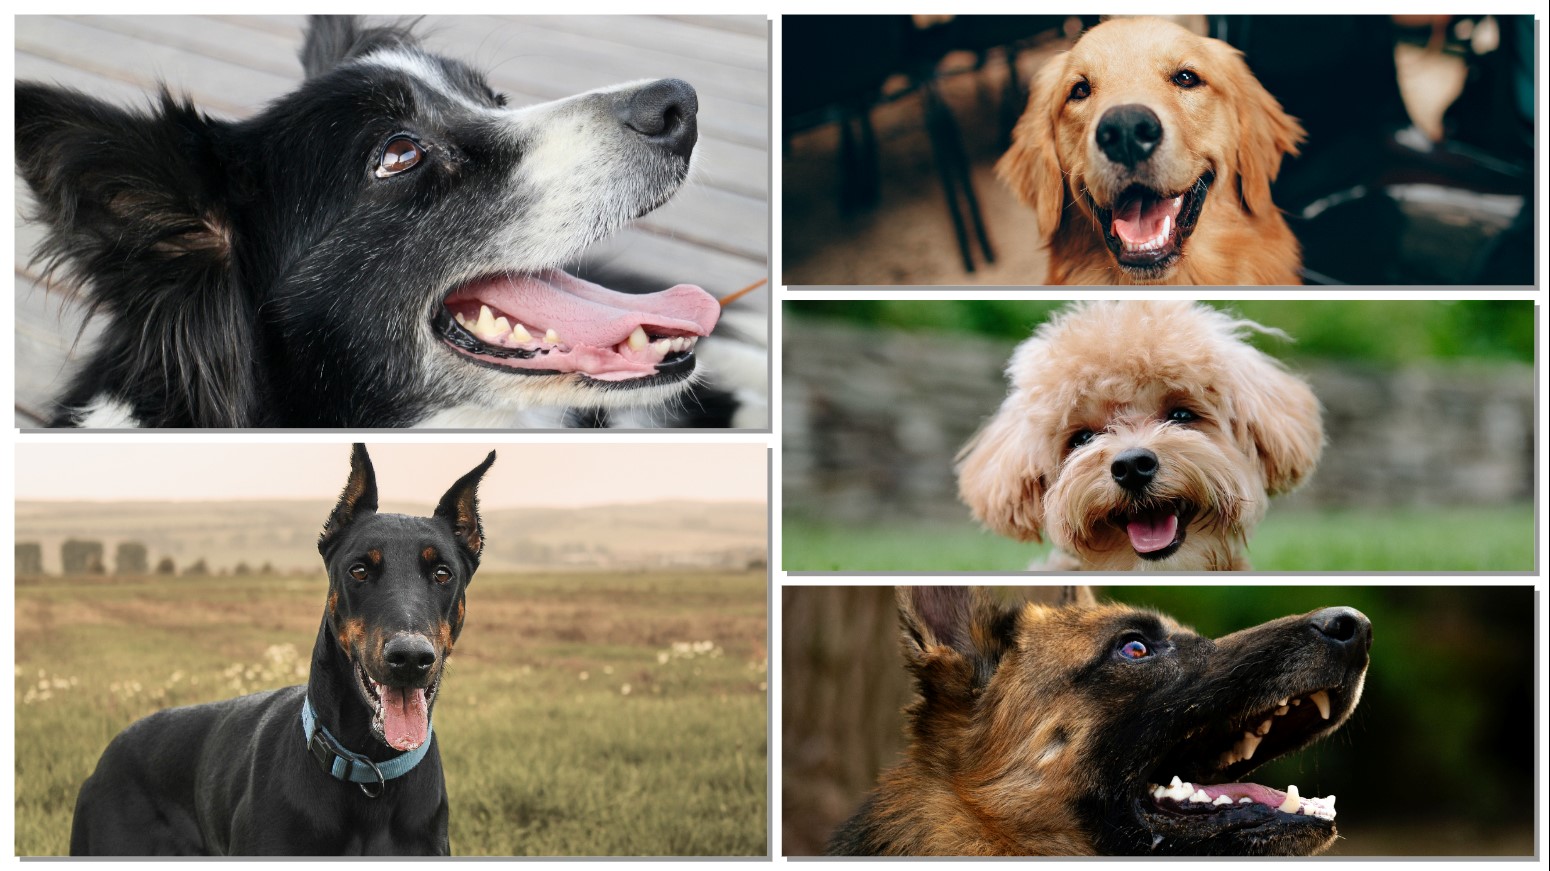 Top 5 Smartest Dog Breeds